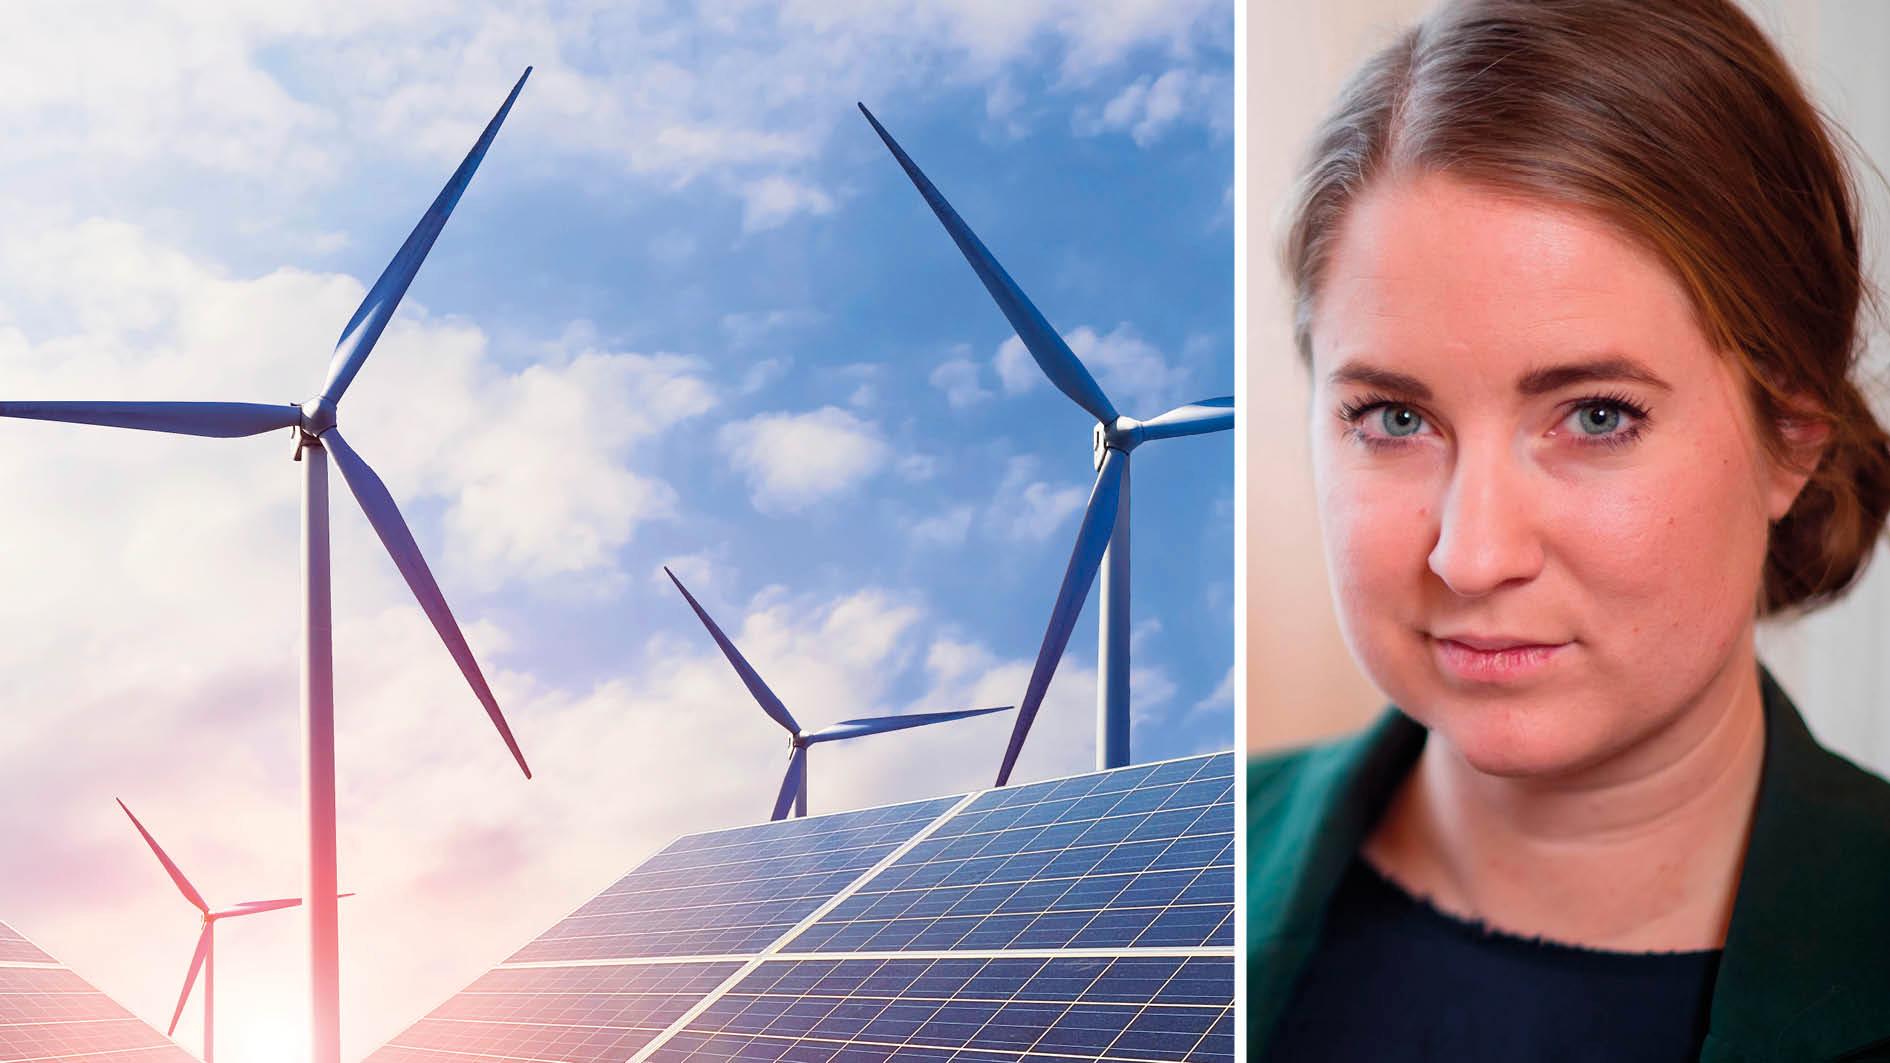 Märkningar som ”bakad med vindkraft” och ”producerad med förnybar energi” riskerar att ge en grovt felaktig bild av de verkliga utsläppen. EU måste revidera systemet – 100 procent förnybart måste betyda 100 procent förnybart, skriver Emma Wiesner.